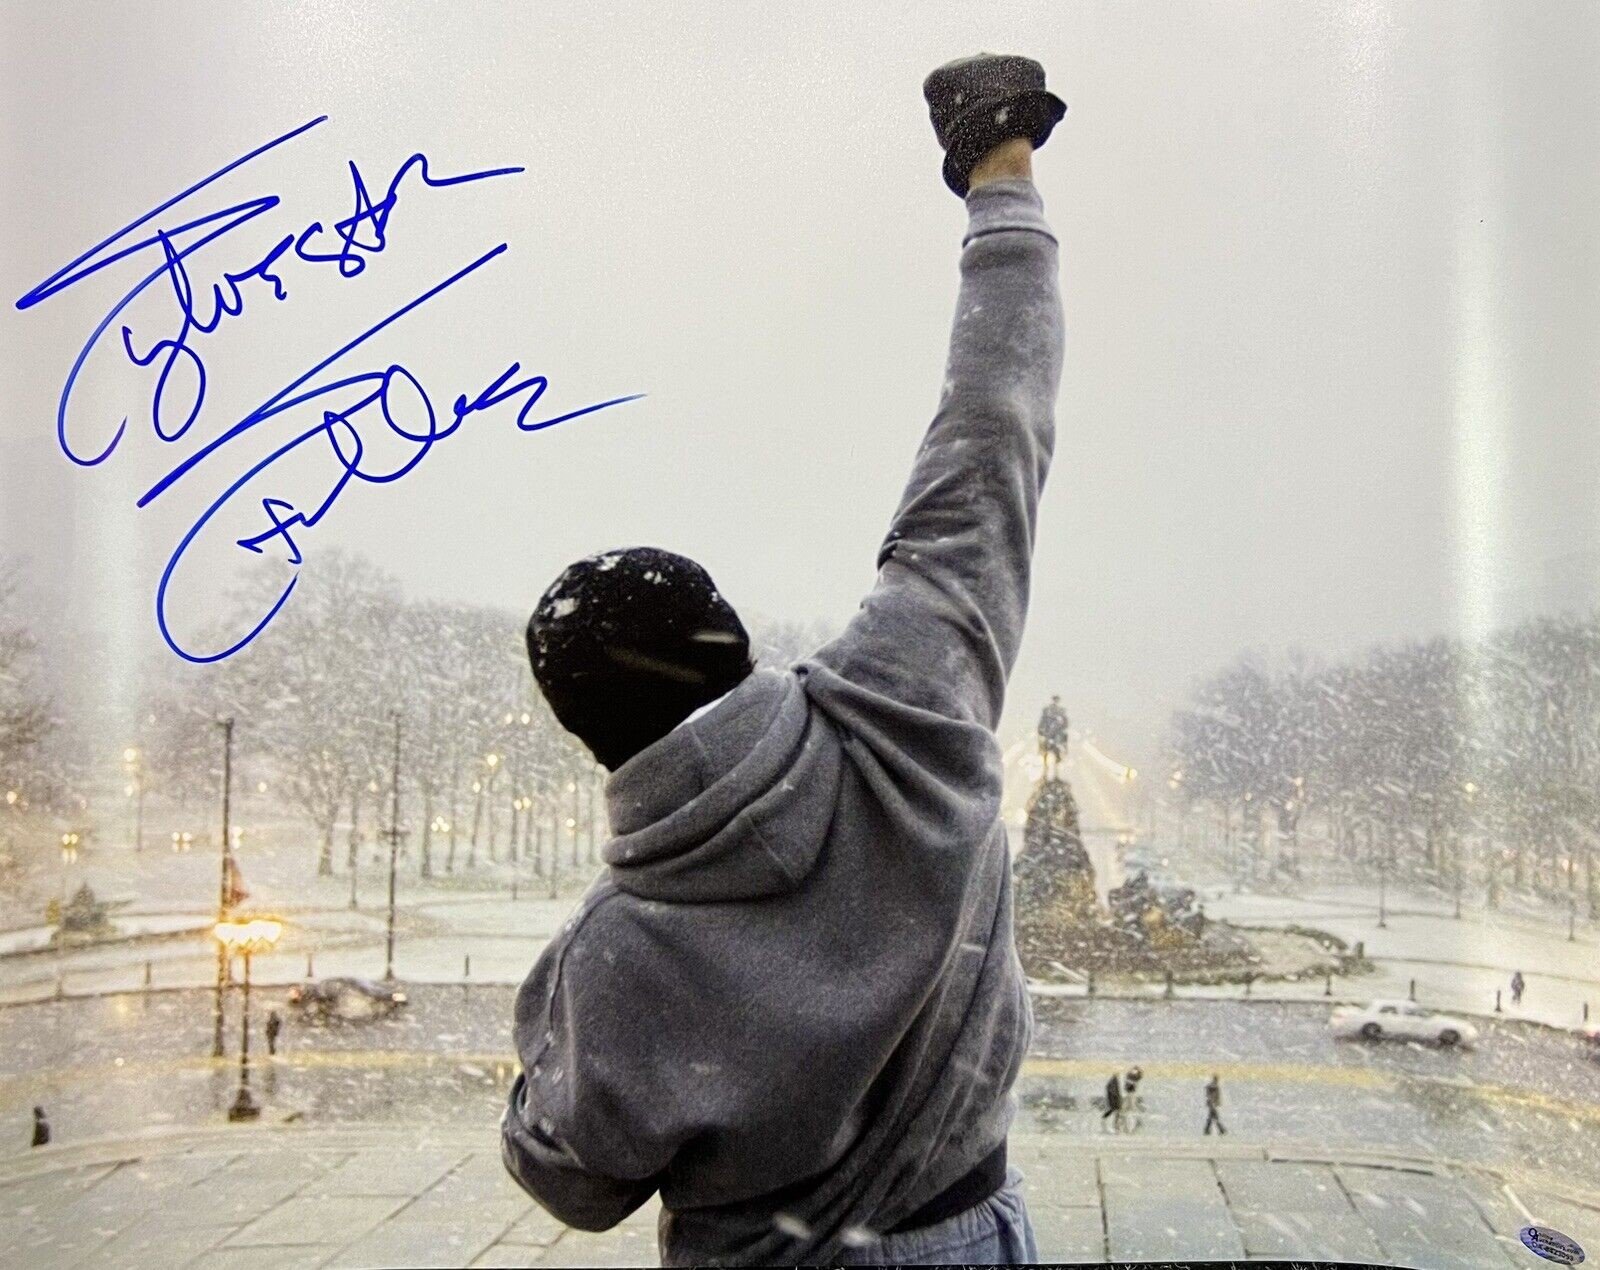 Stallone, Sylvester - Signed Photograph as Rocky Balboa